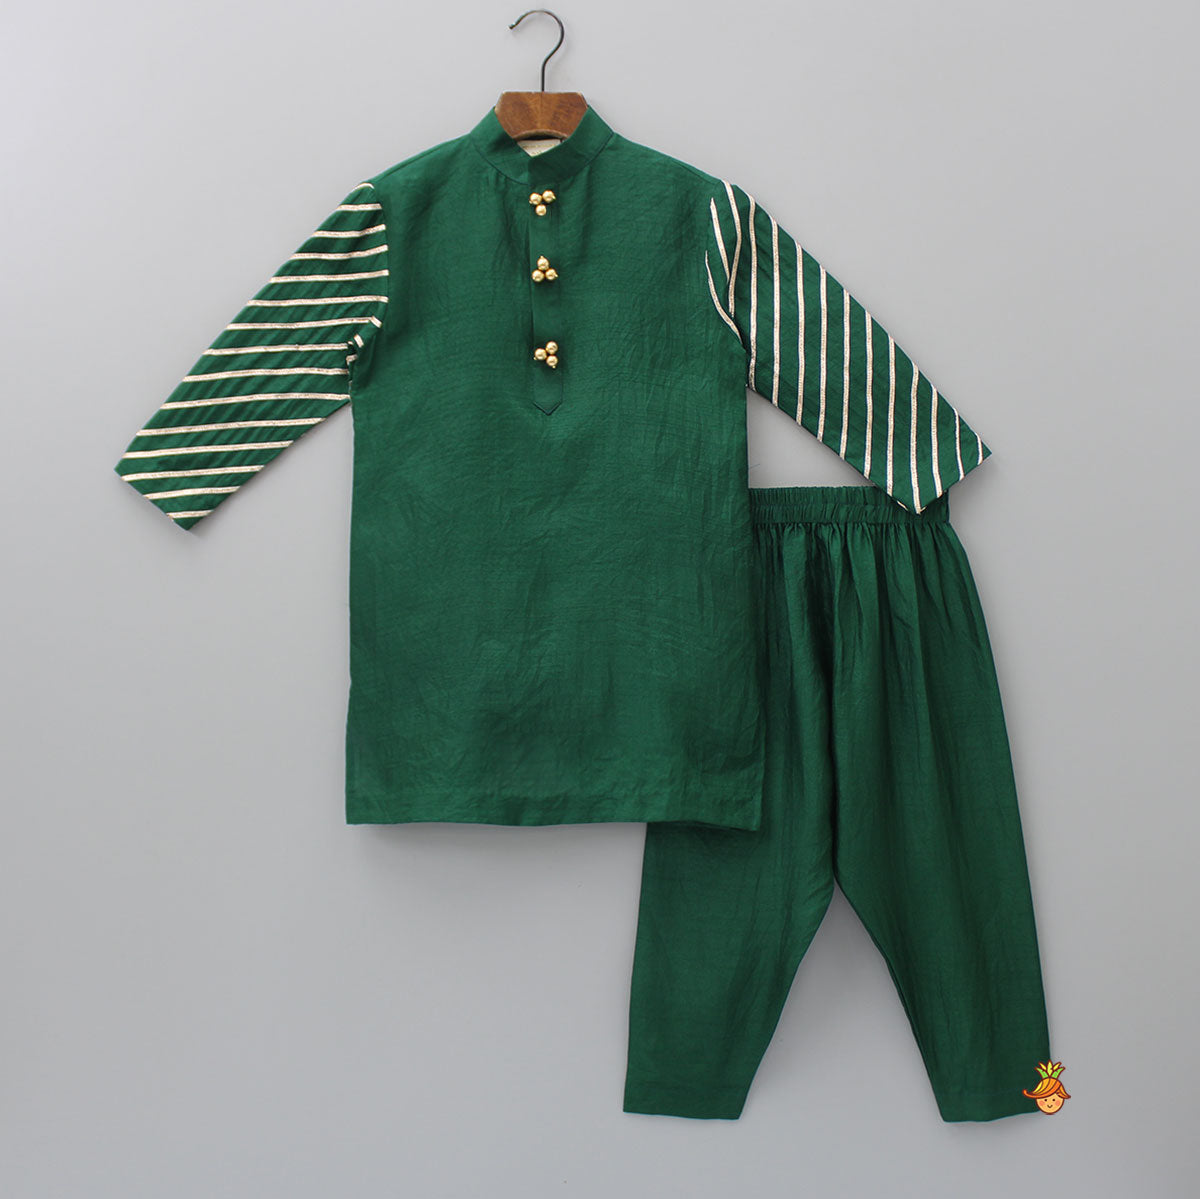 Ethnic Gota Lace Detailed Green Kurta And Jacket With Pyjama